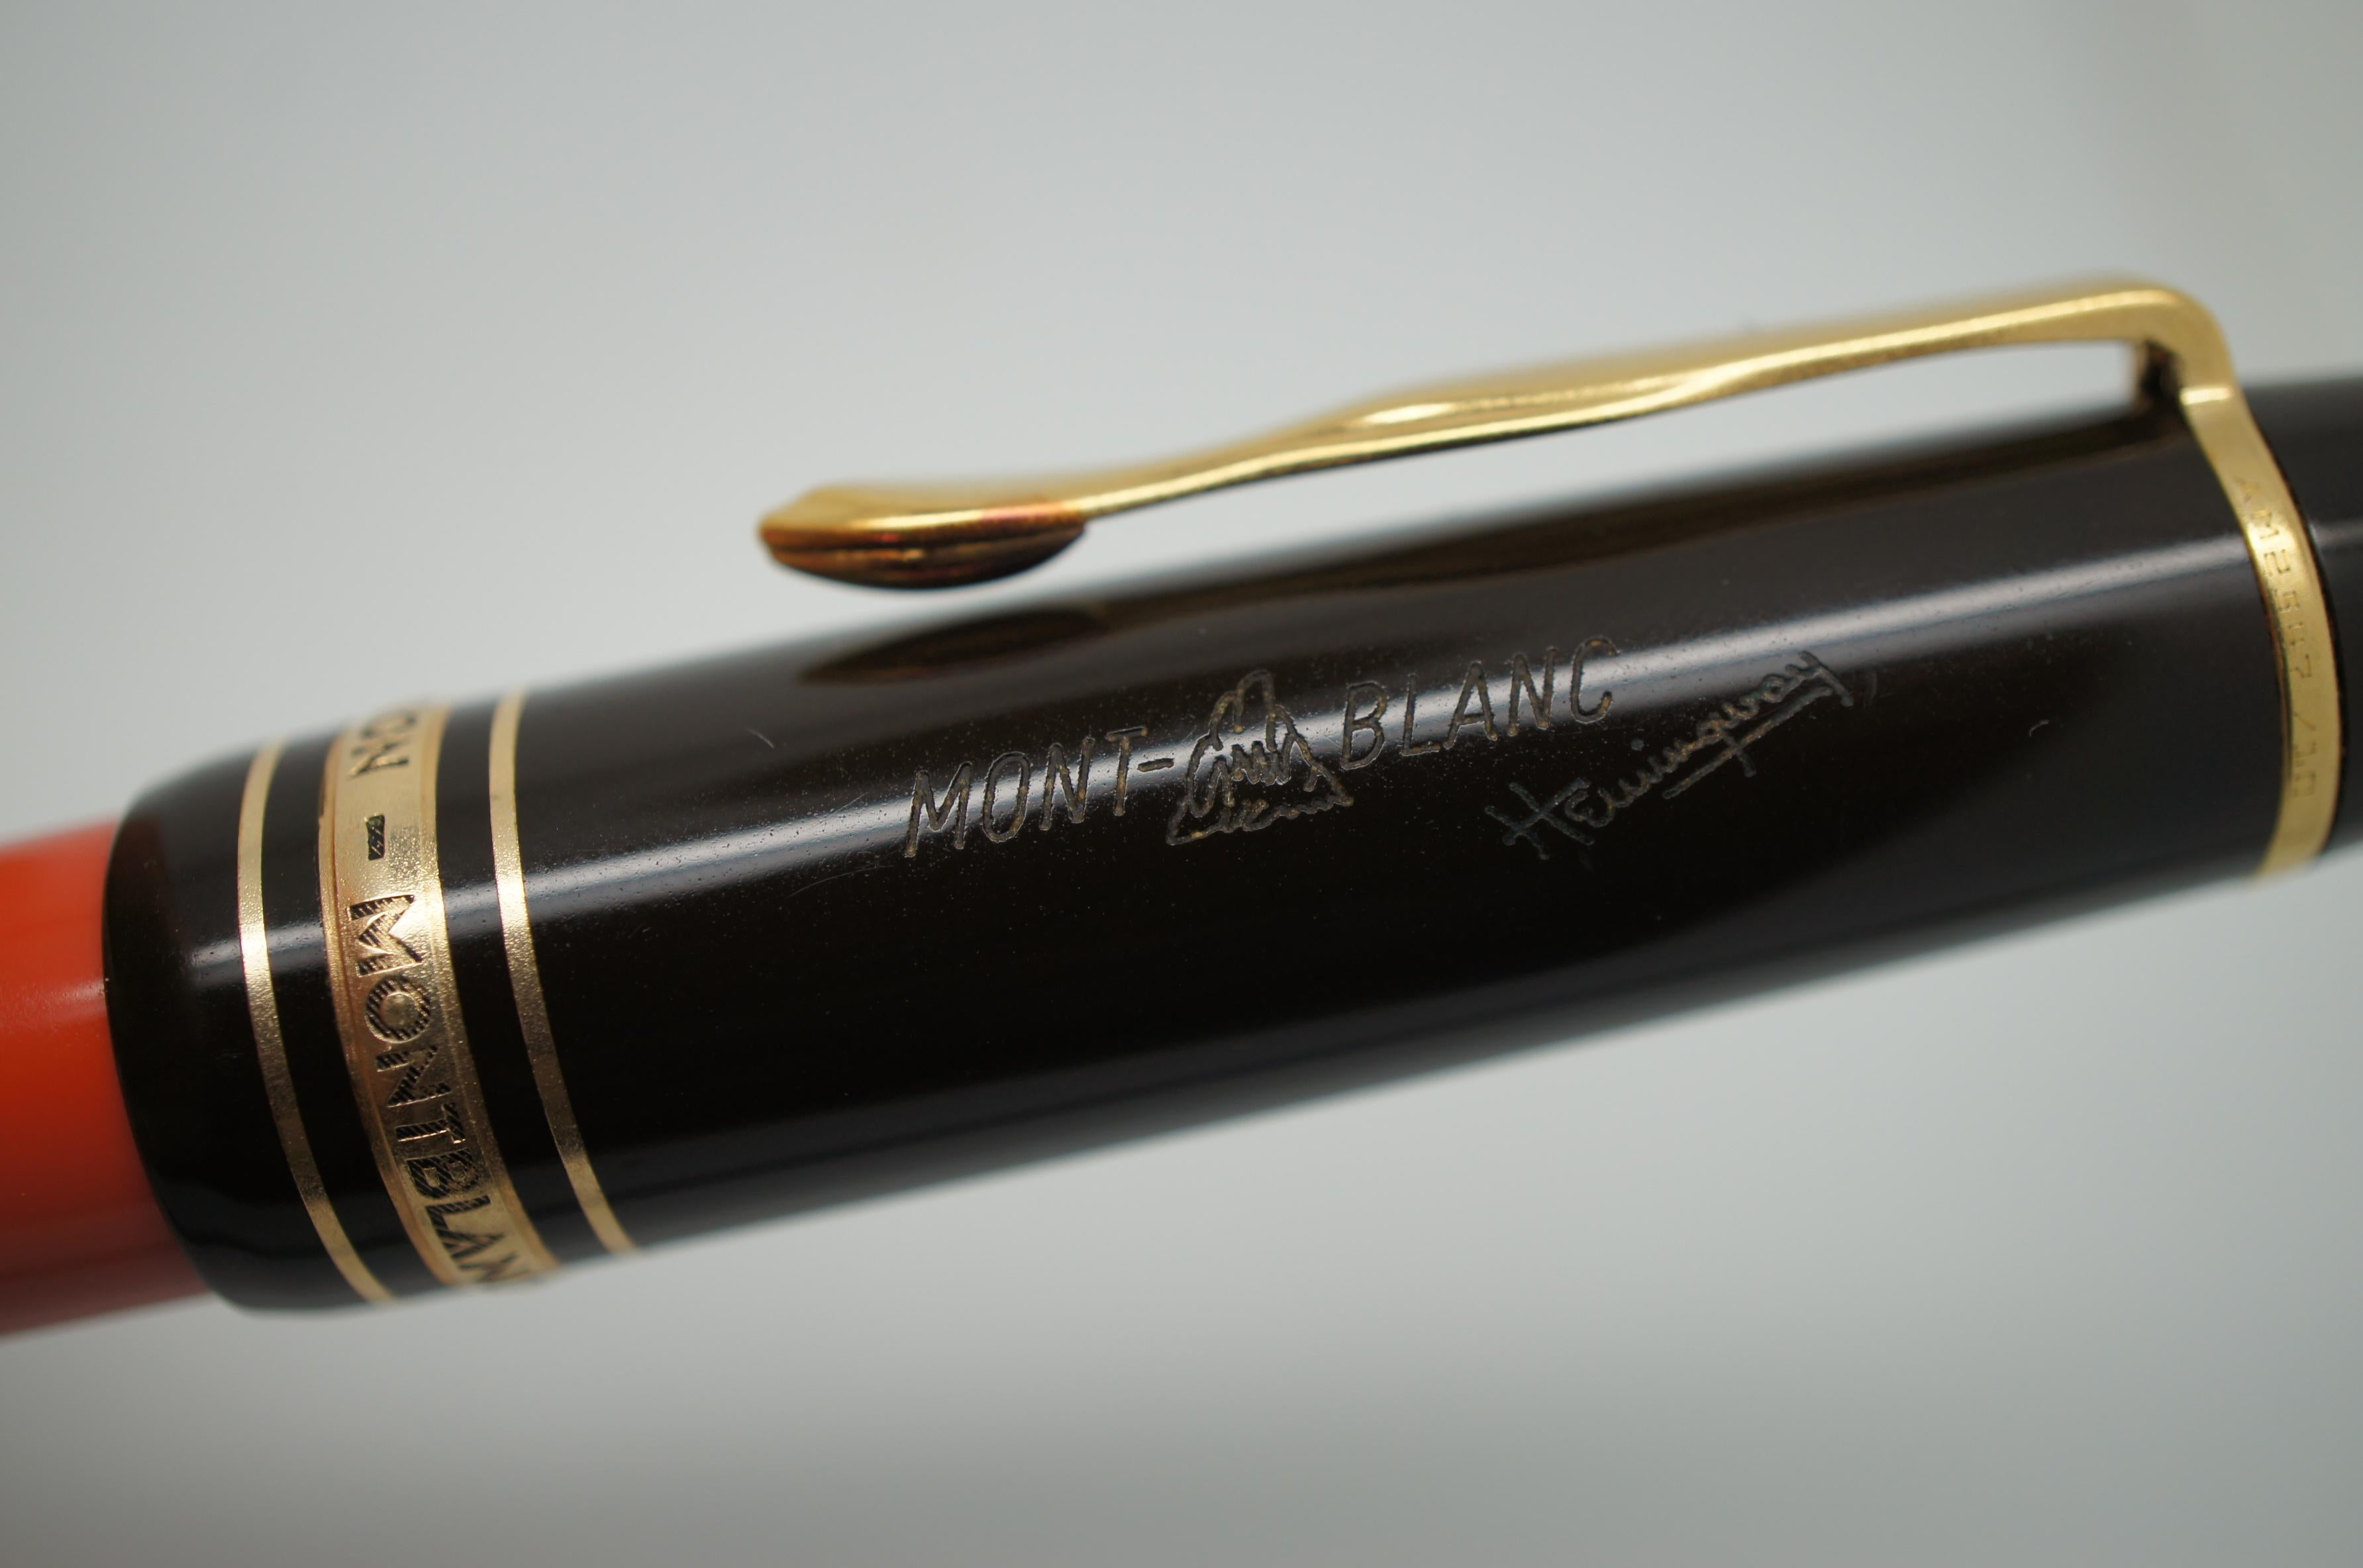 hemingway montblanc pen